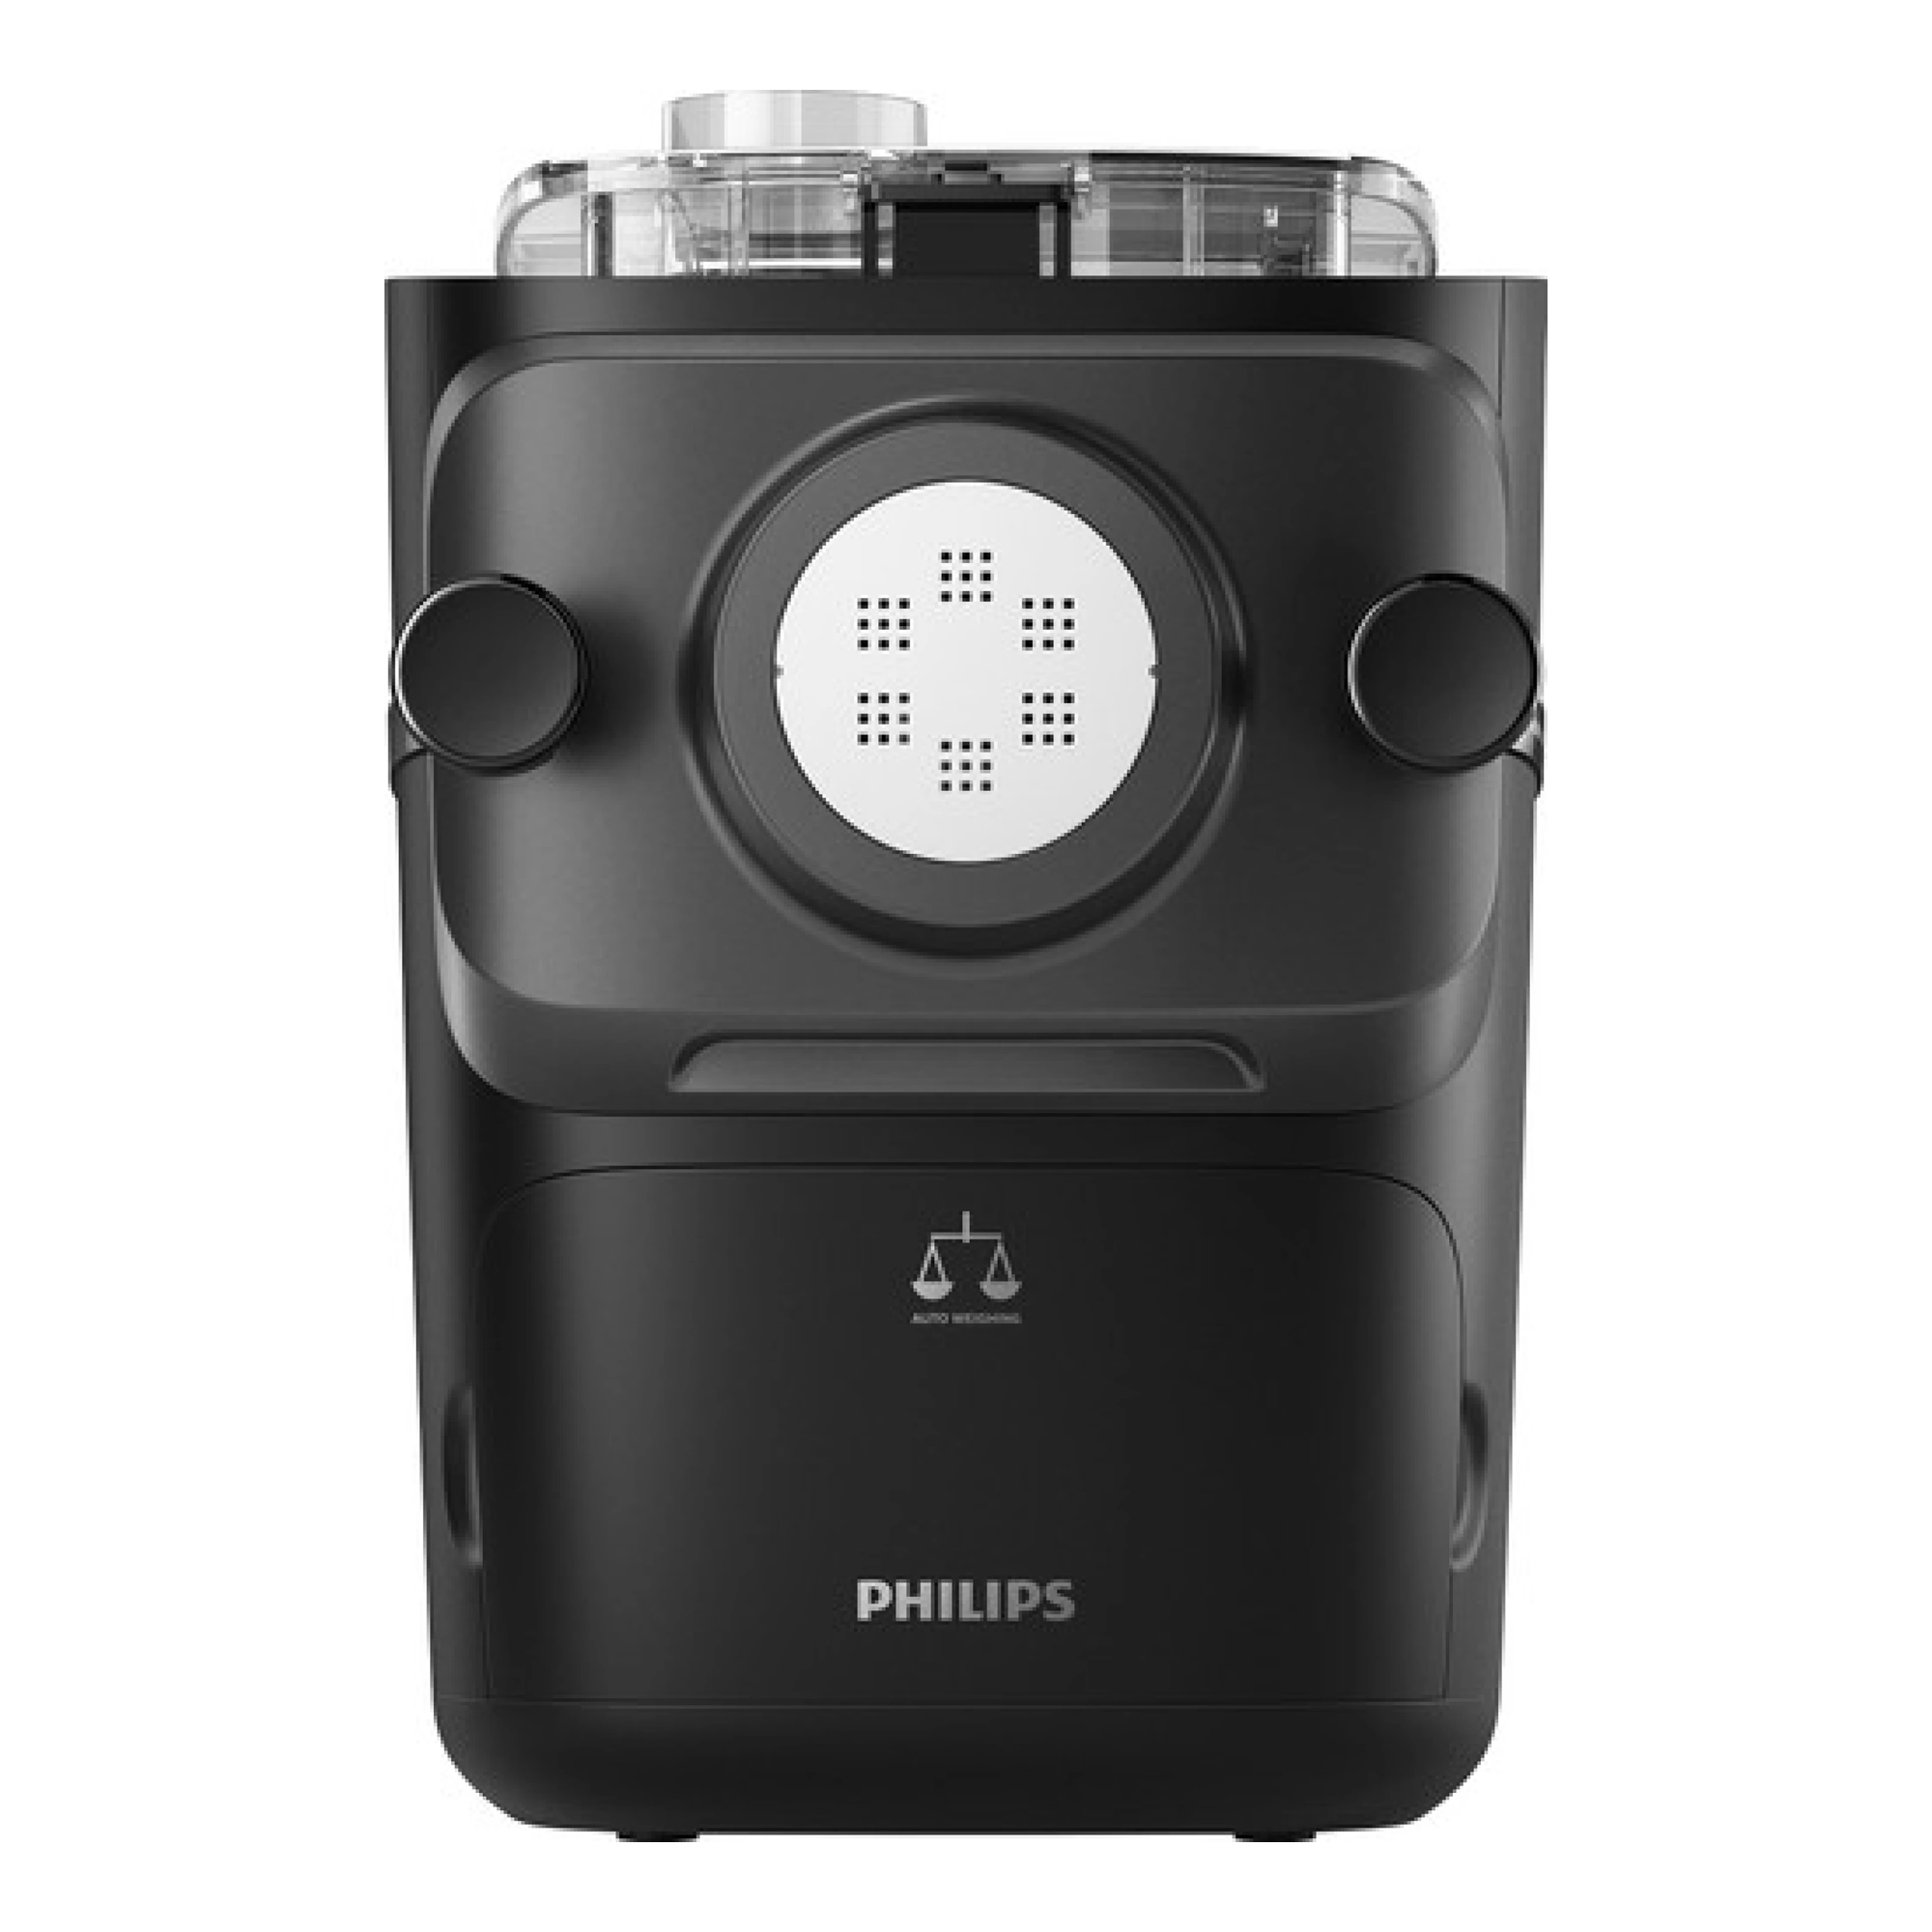 Aparat za tjesteninu Philips HR2665/96